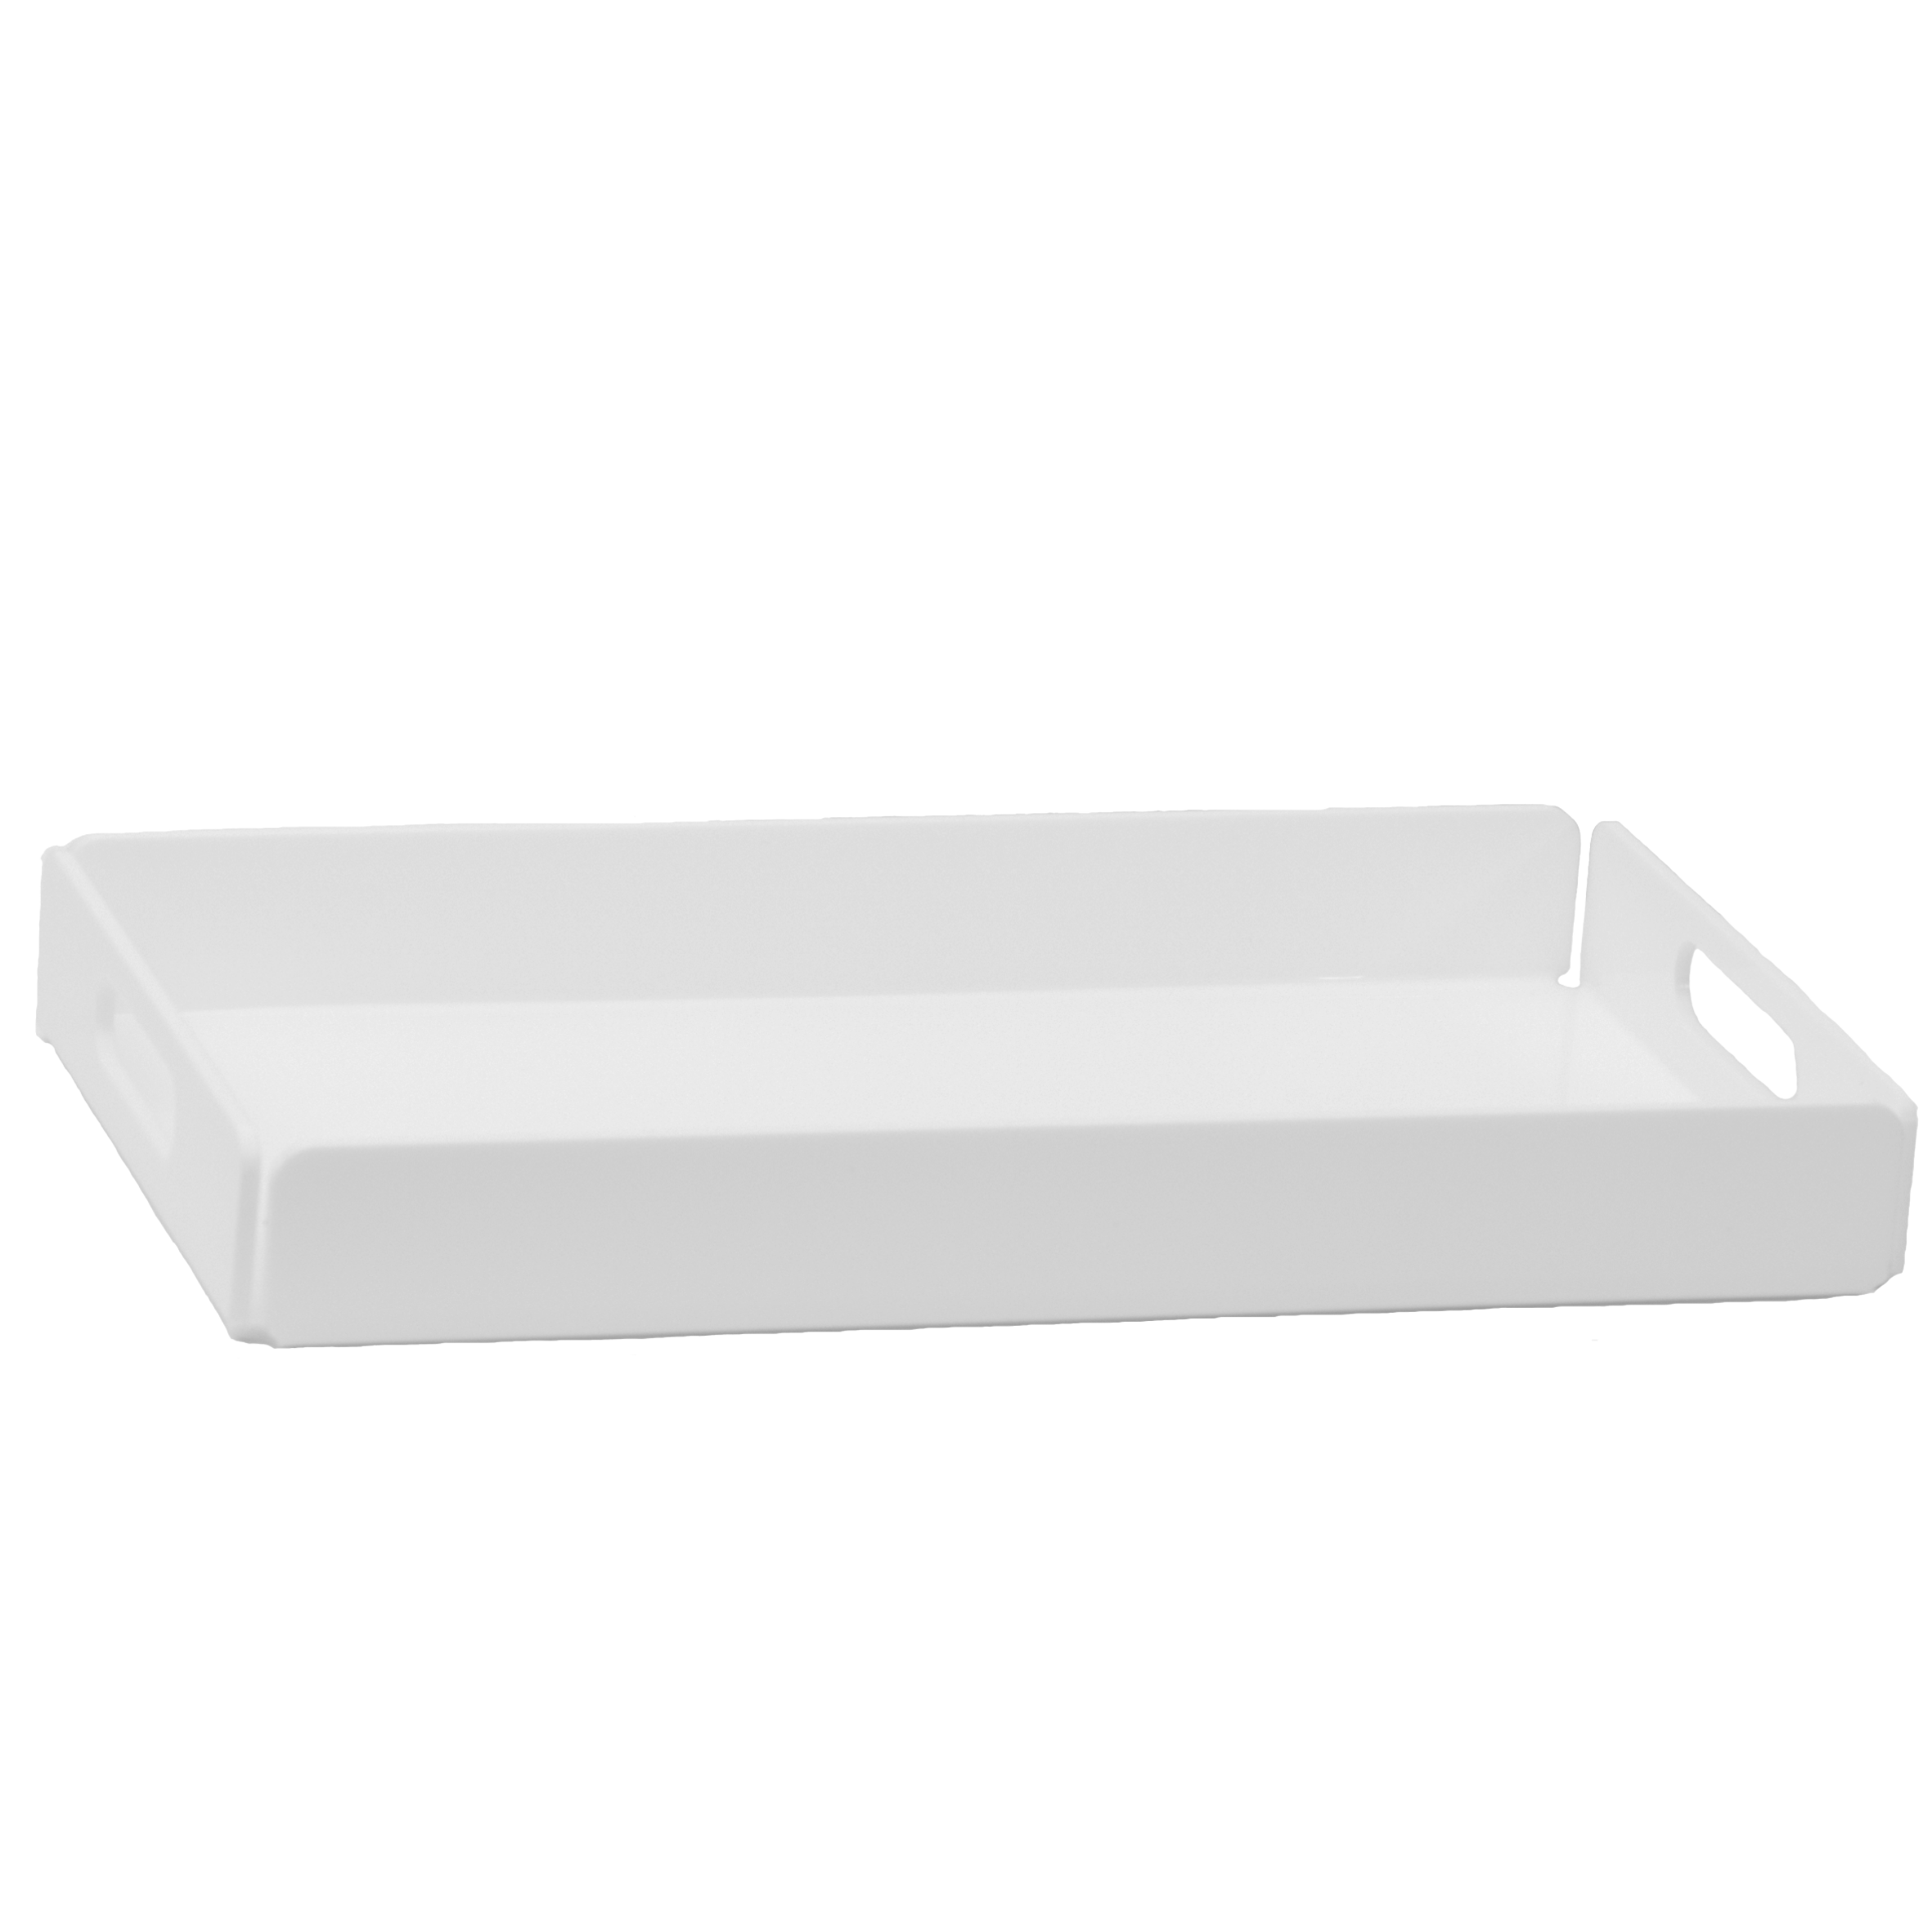 RECTANGULAR TRAY White  Plexiglas 42x24 cm